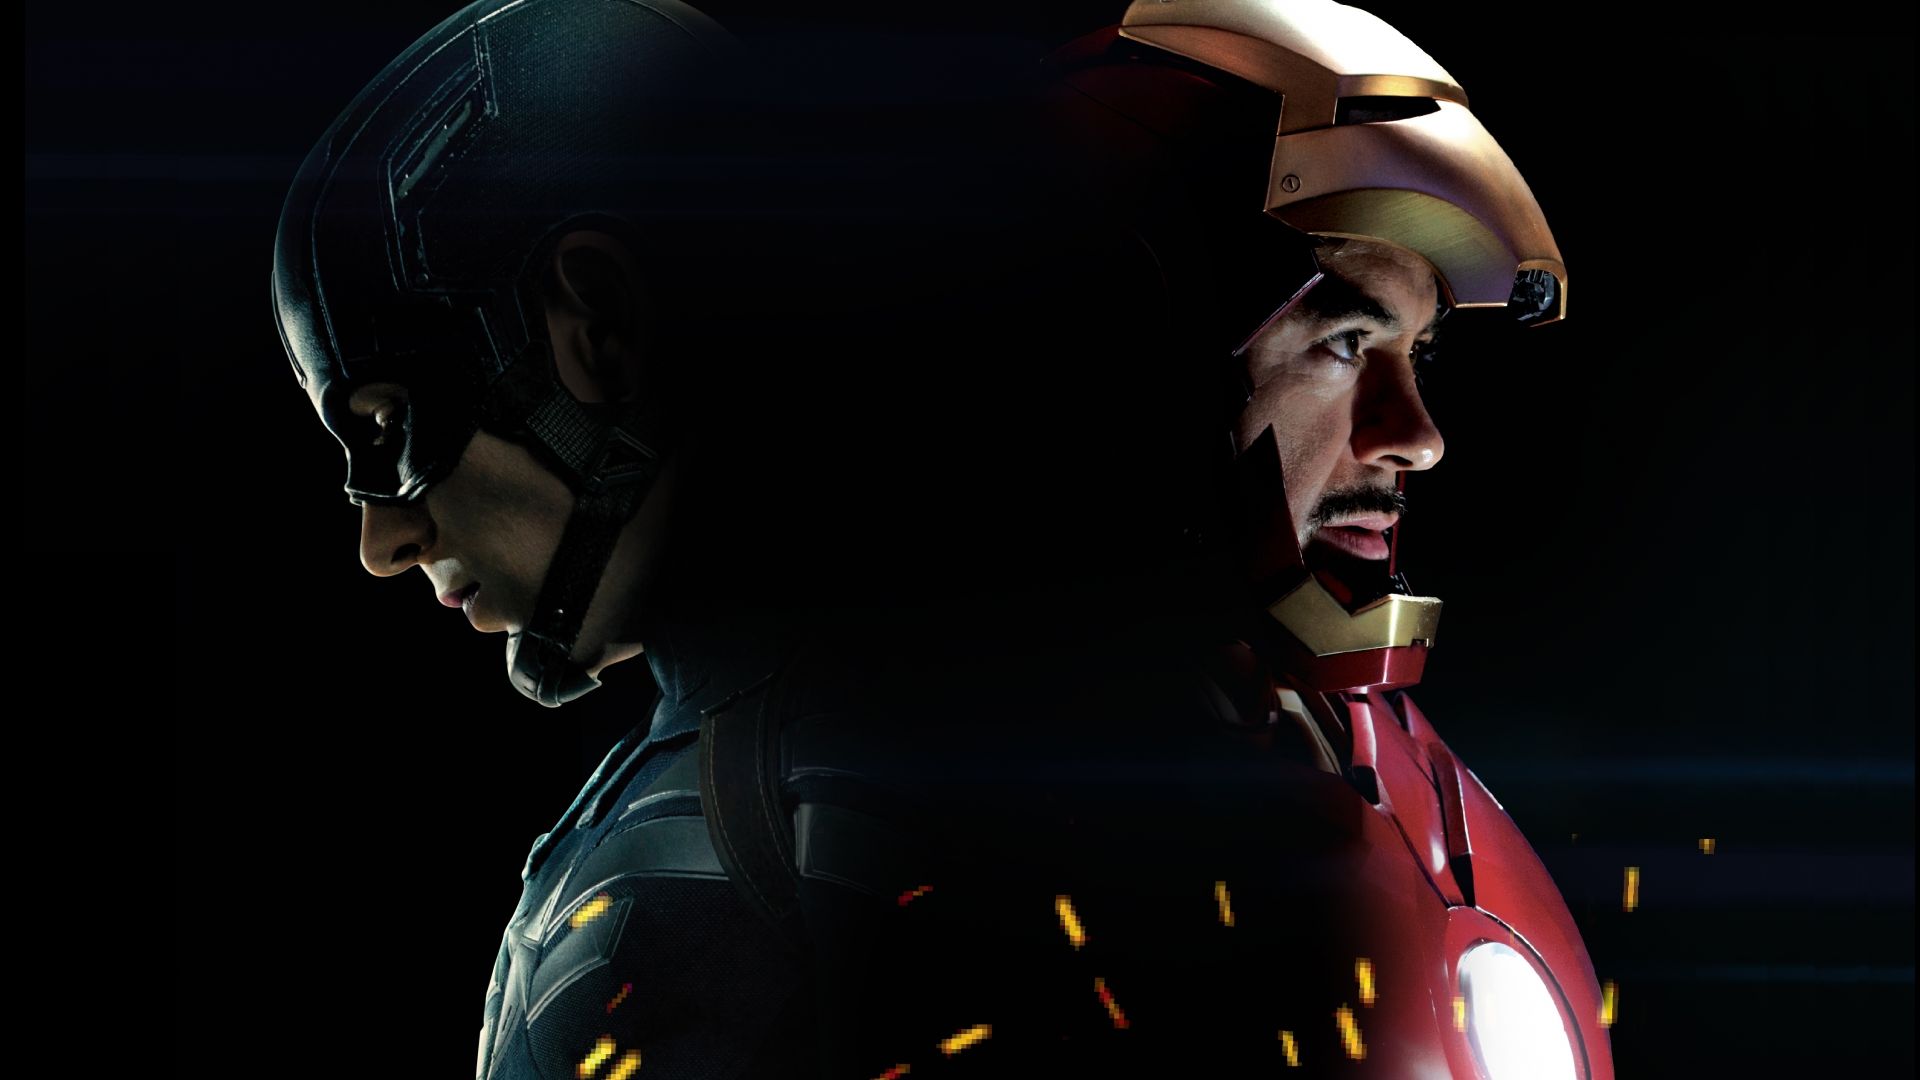 Первый мститель: Гражданская война, железный человек Марвел, лучшие фильмы 2016, Captain America 3: civil war, Iron Man, Marvel, best movies of 2016 (horizontal)